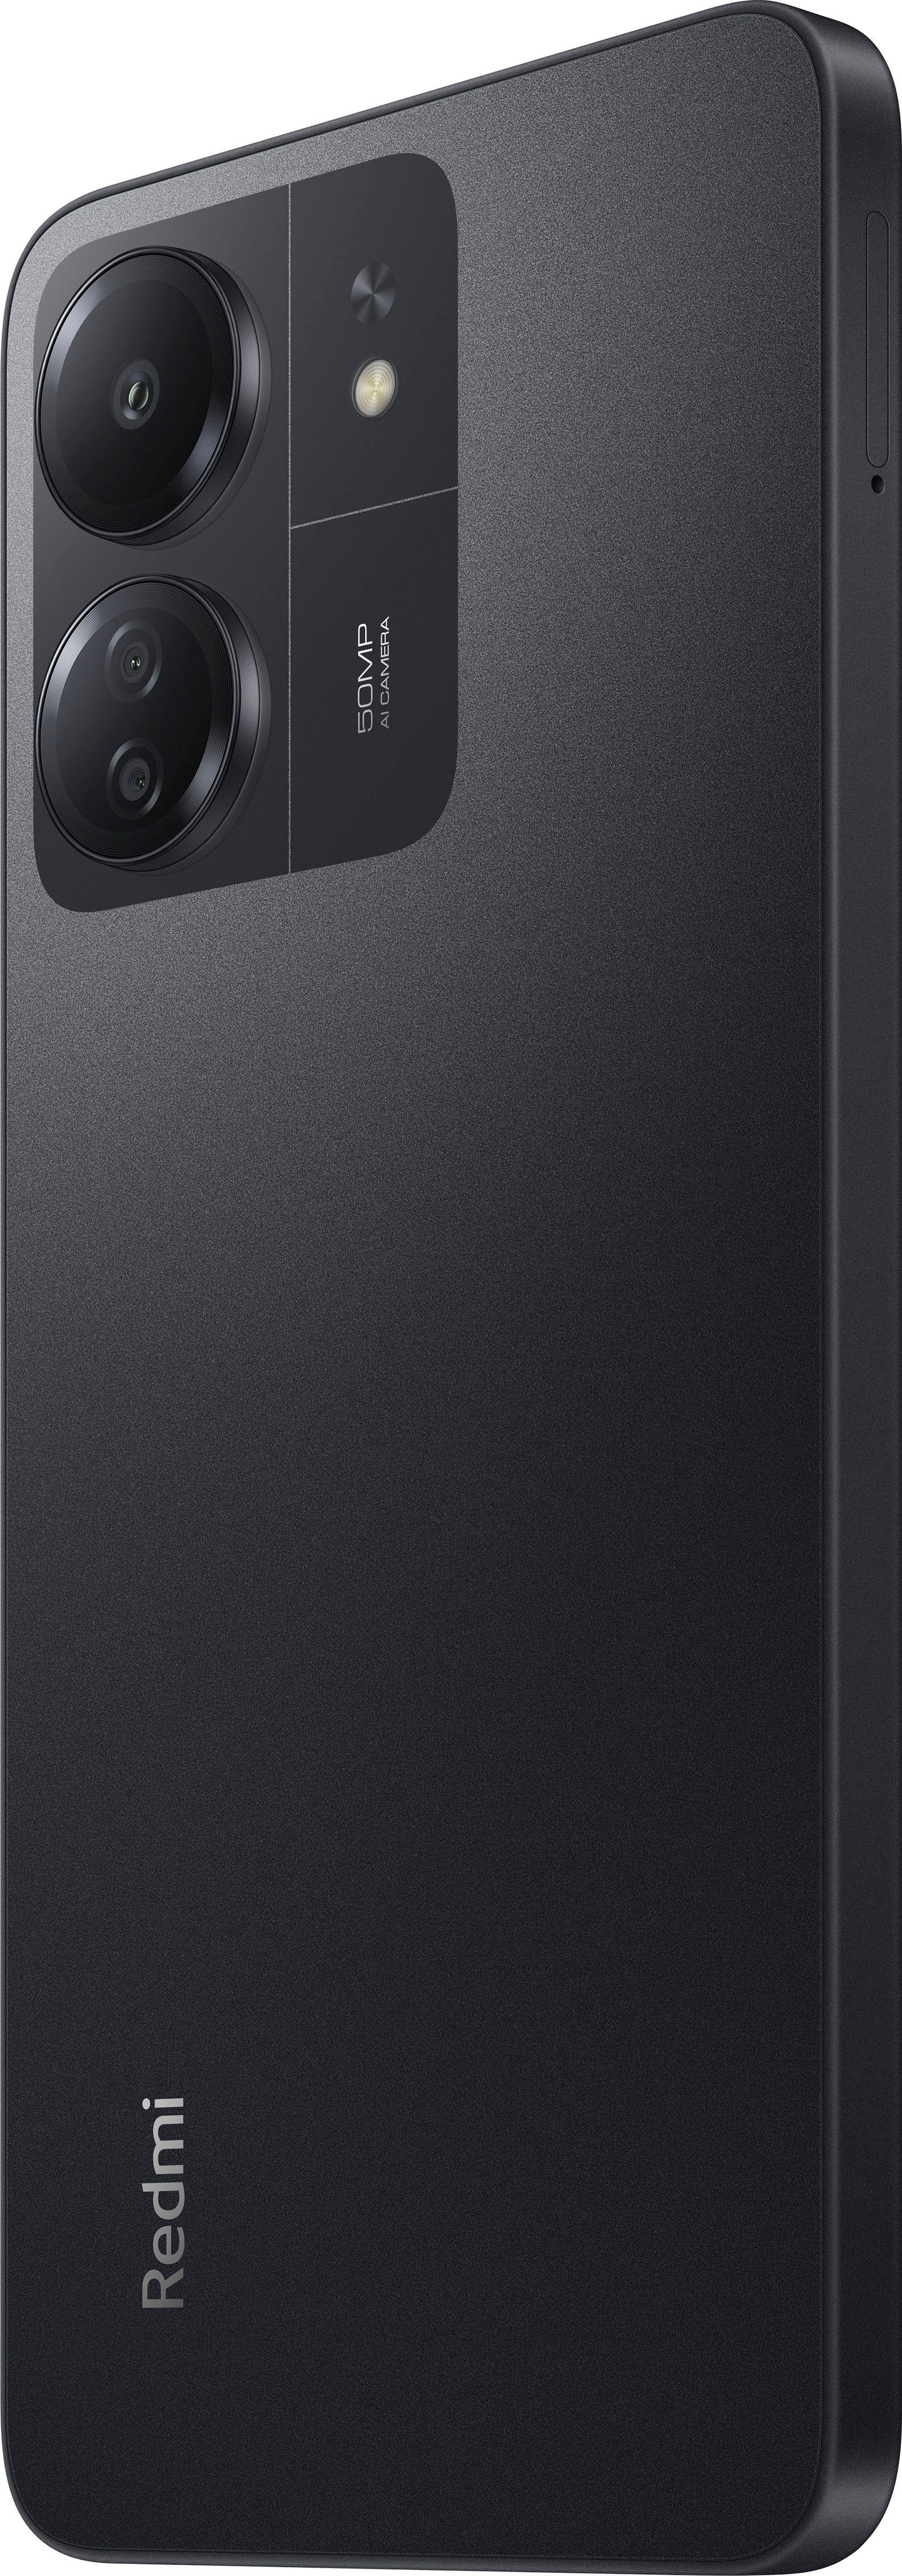 MP 50 Xiaomi 8GB+256GB Speicherplatz, 256 Zoll, 13C cm/6,74 Schwarz Smartphone Kamera) Redmi (17,1 GB